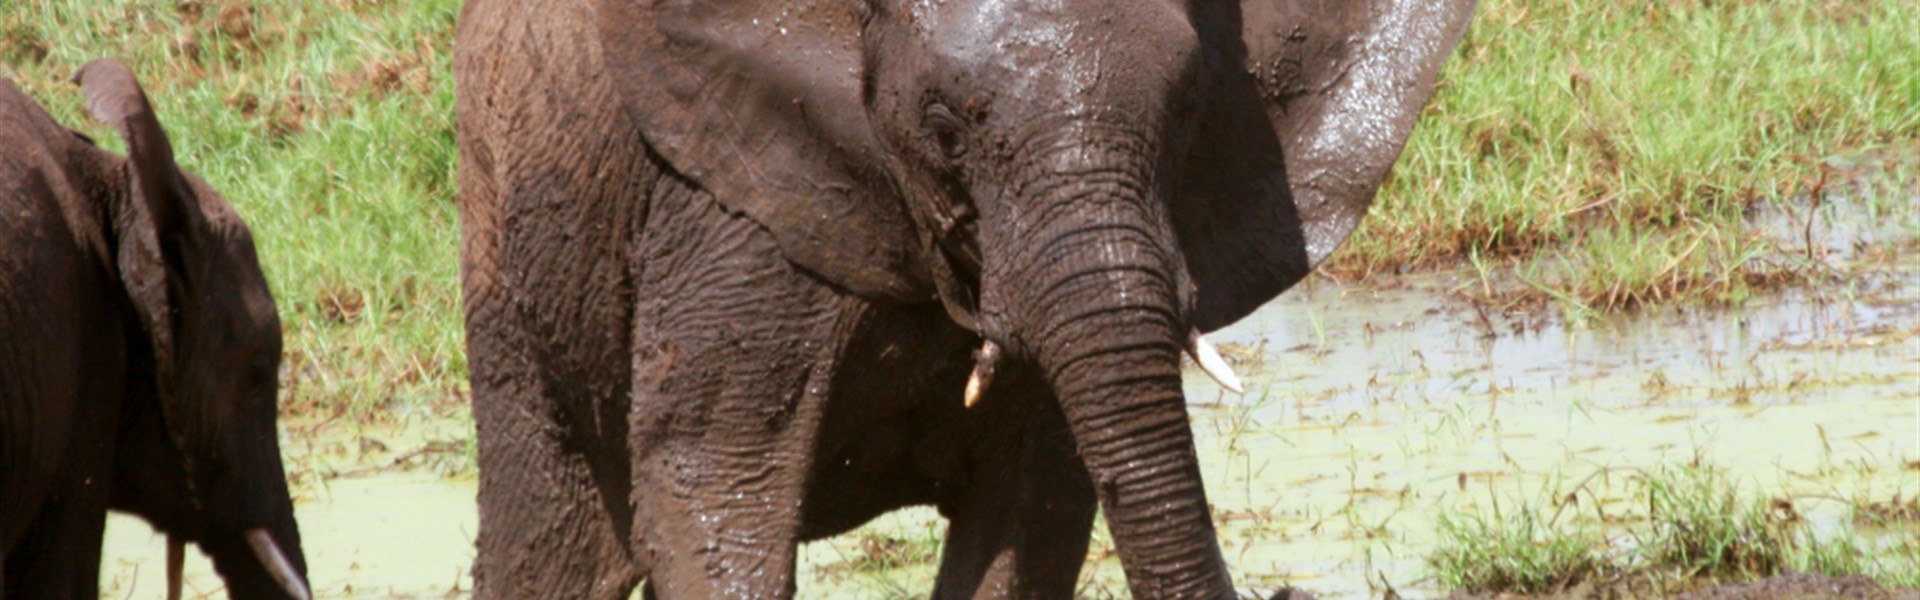 Tarangire - Tarangire_ráh slonů a baobabů